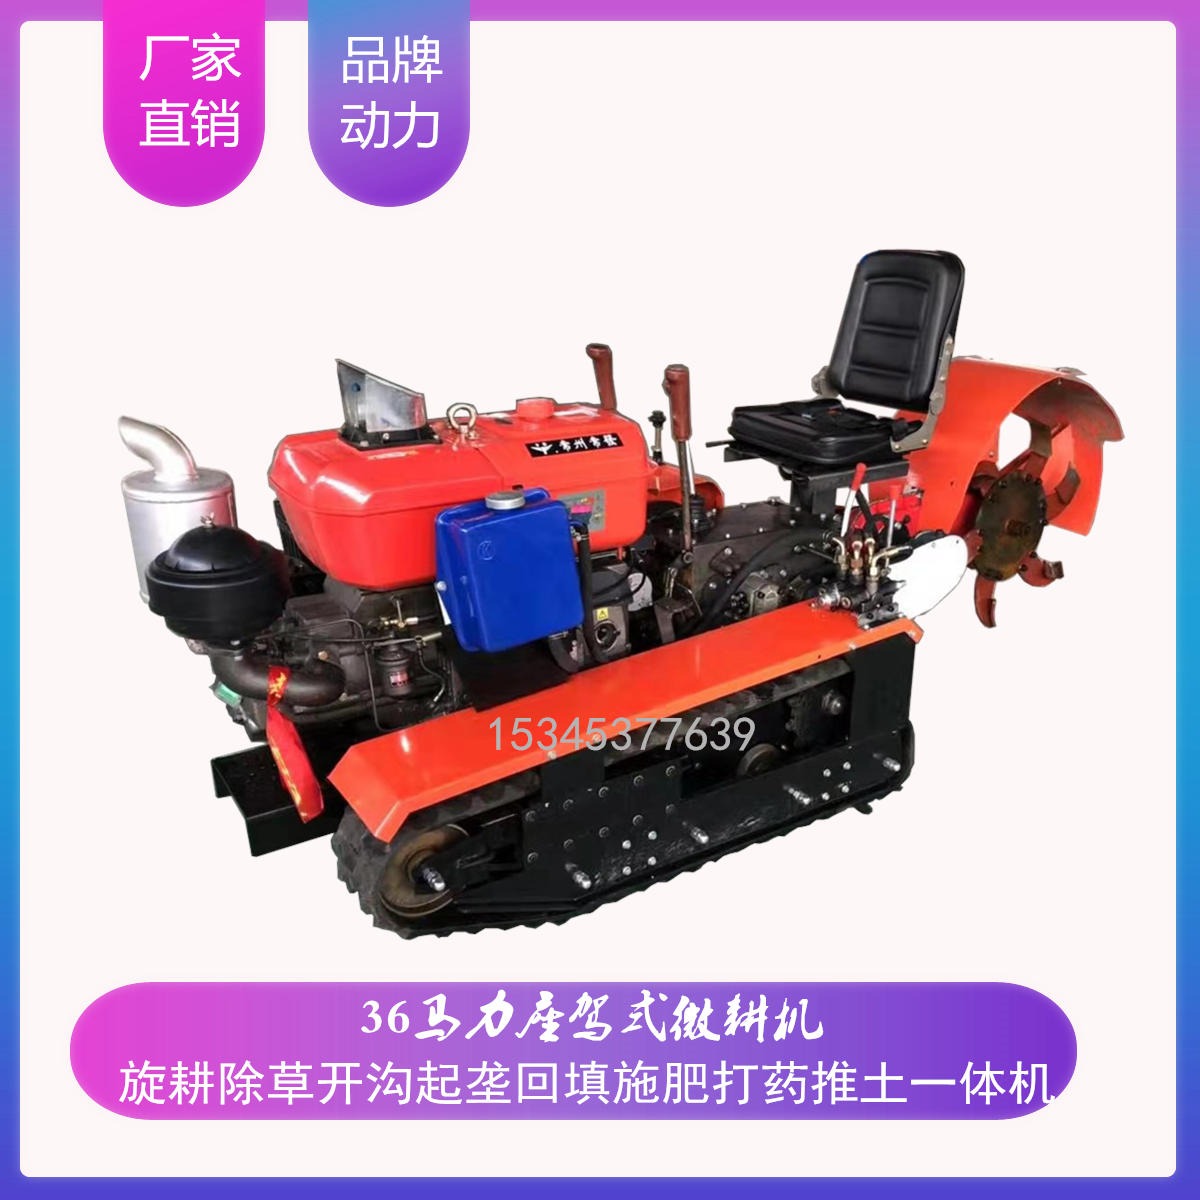 新型旋耕机 四川山地用的耕地机 座驾式微耕机 工程橡胶履带式微耕机